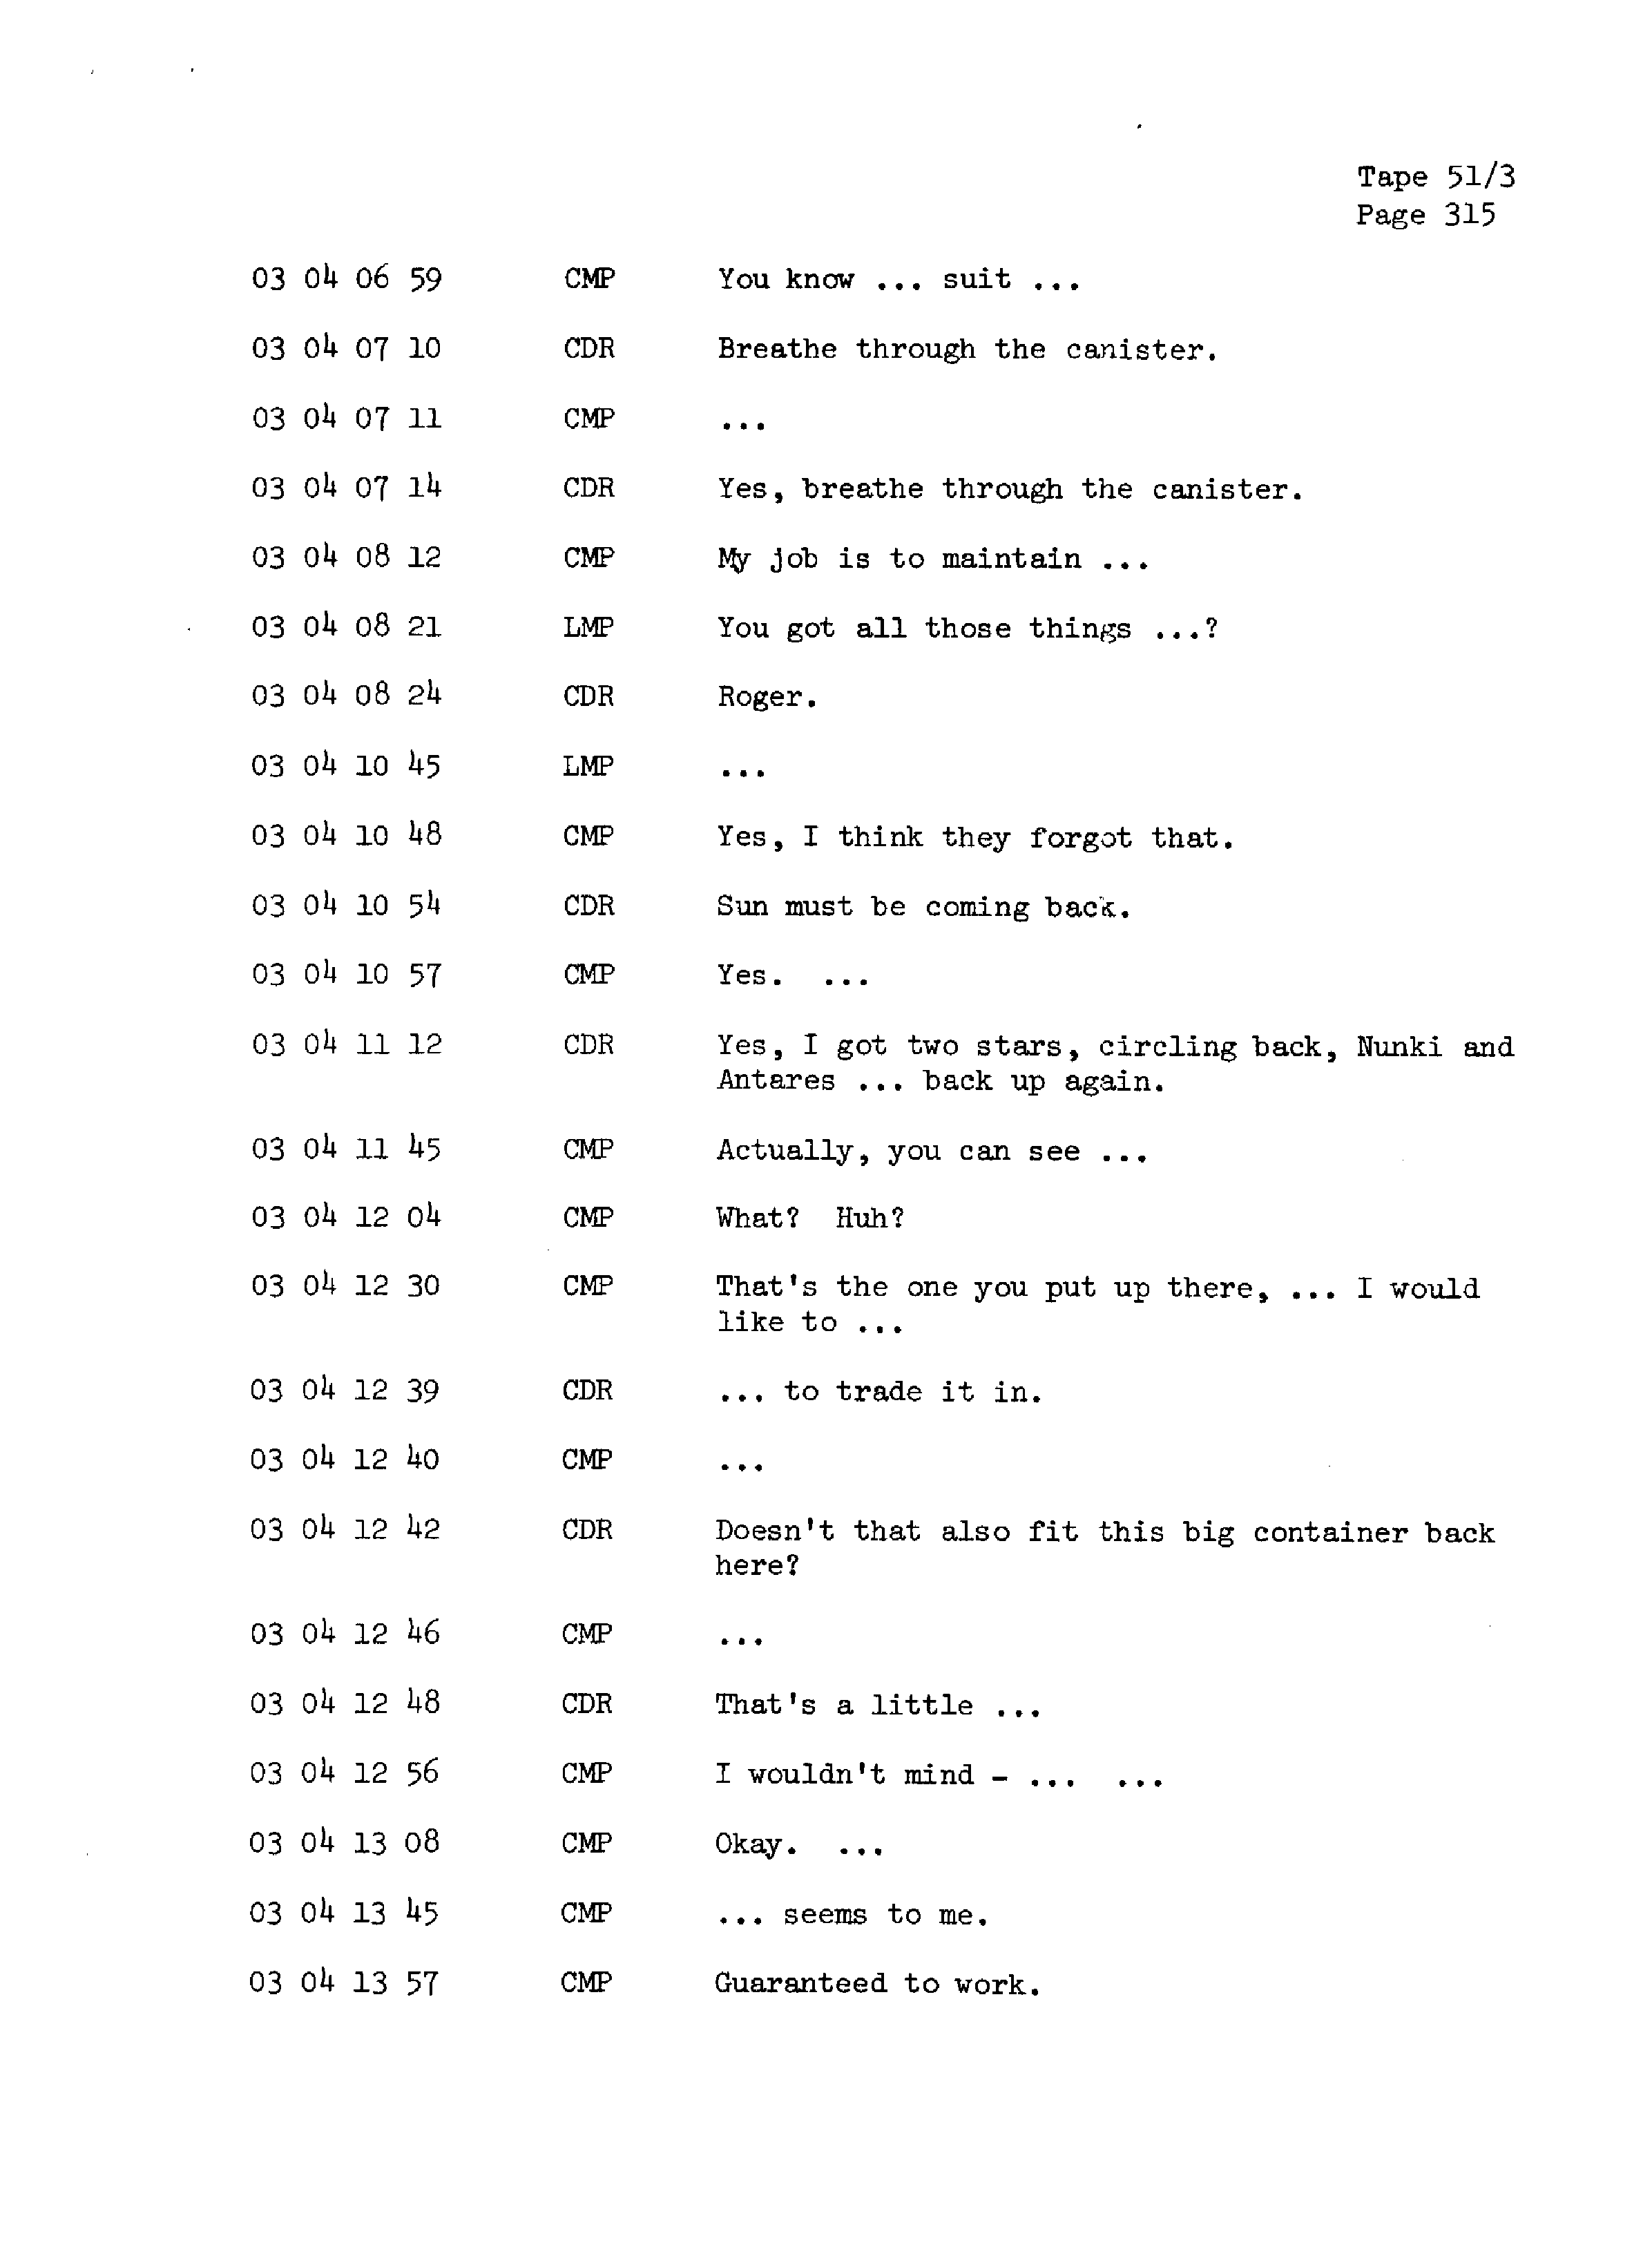 Page 322 of Apollo 13’s original transcript